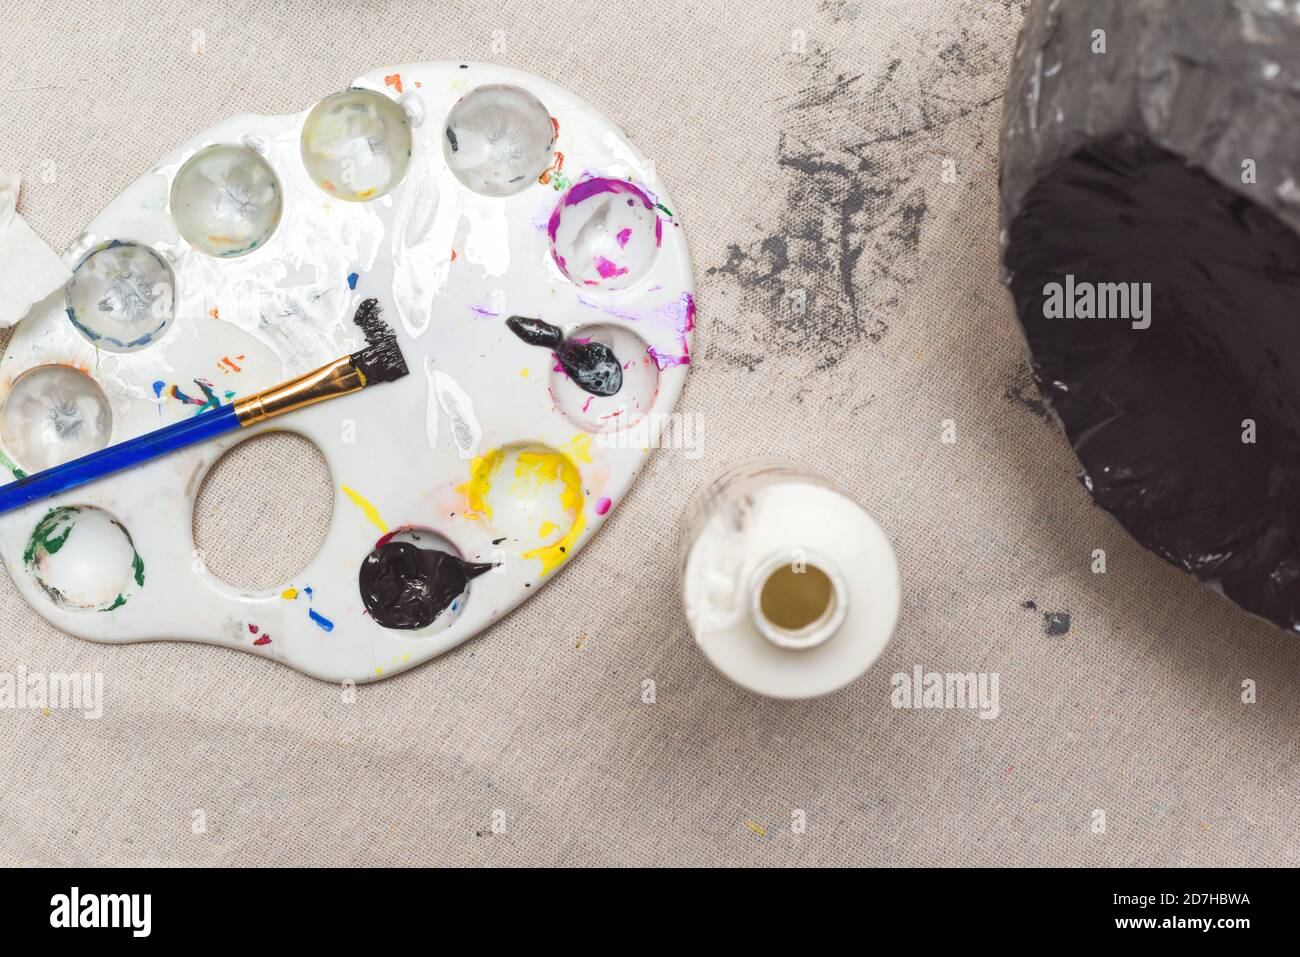 Kinder Kunstprojekt im Gange in einer heimischen Küche Zimmer Zu Hause Stockfoto